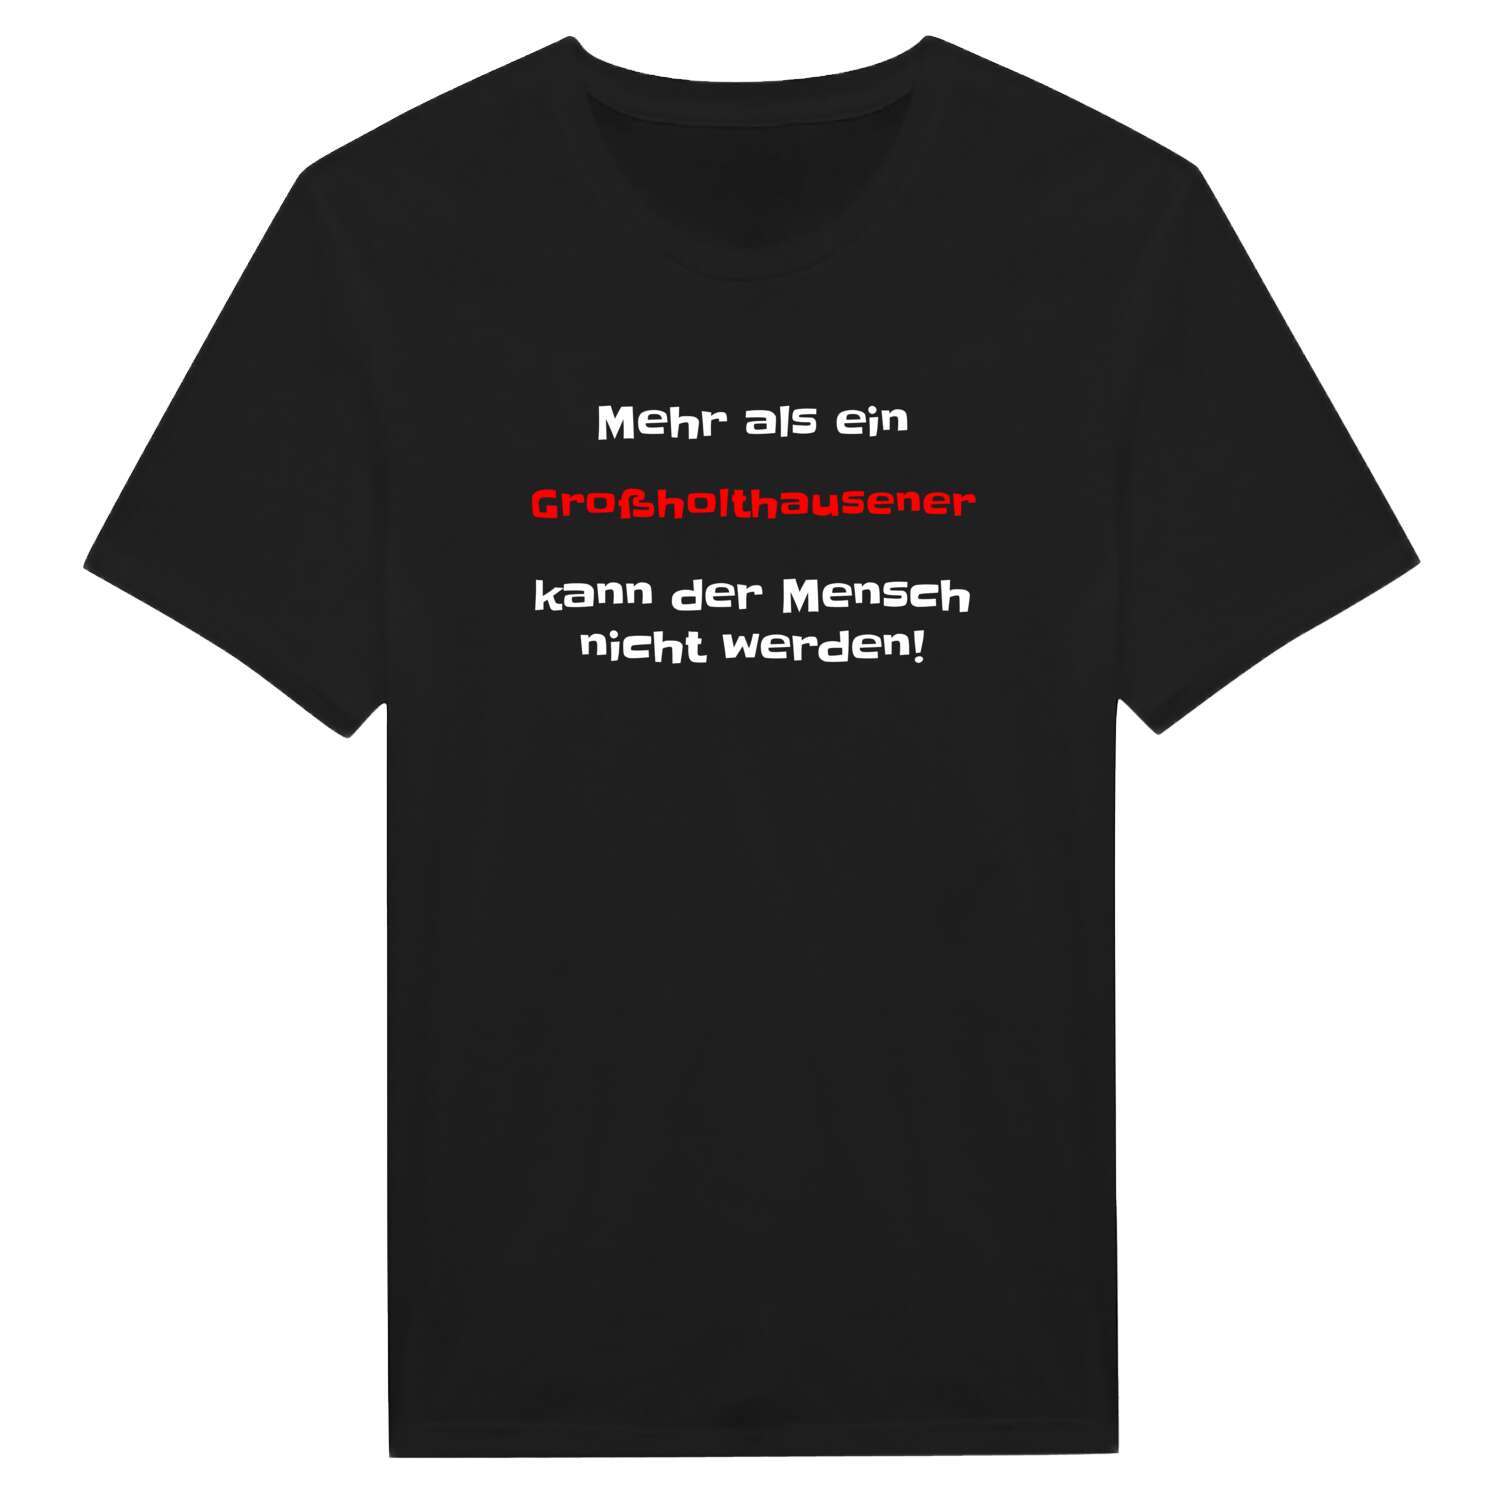 Großholthausen T-Shirt »Mehr als ein«